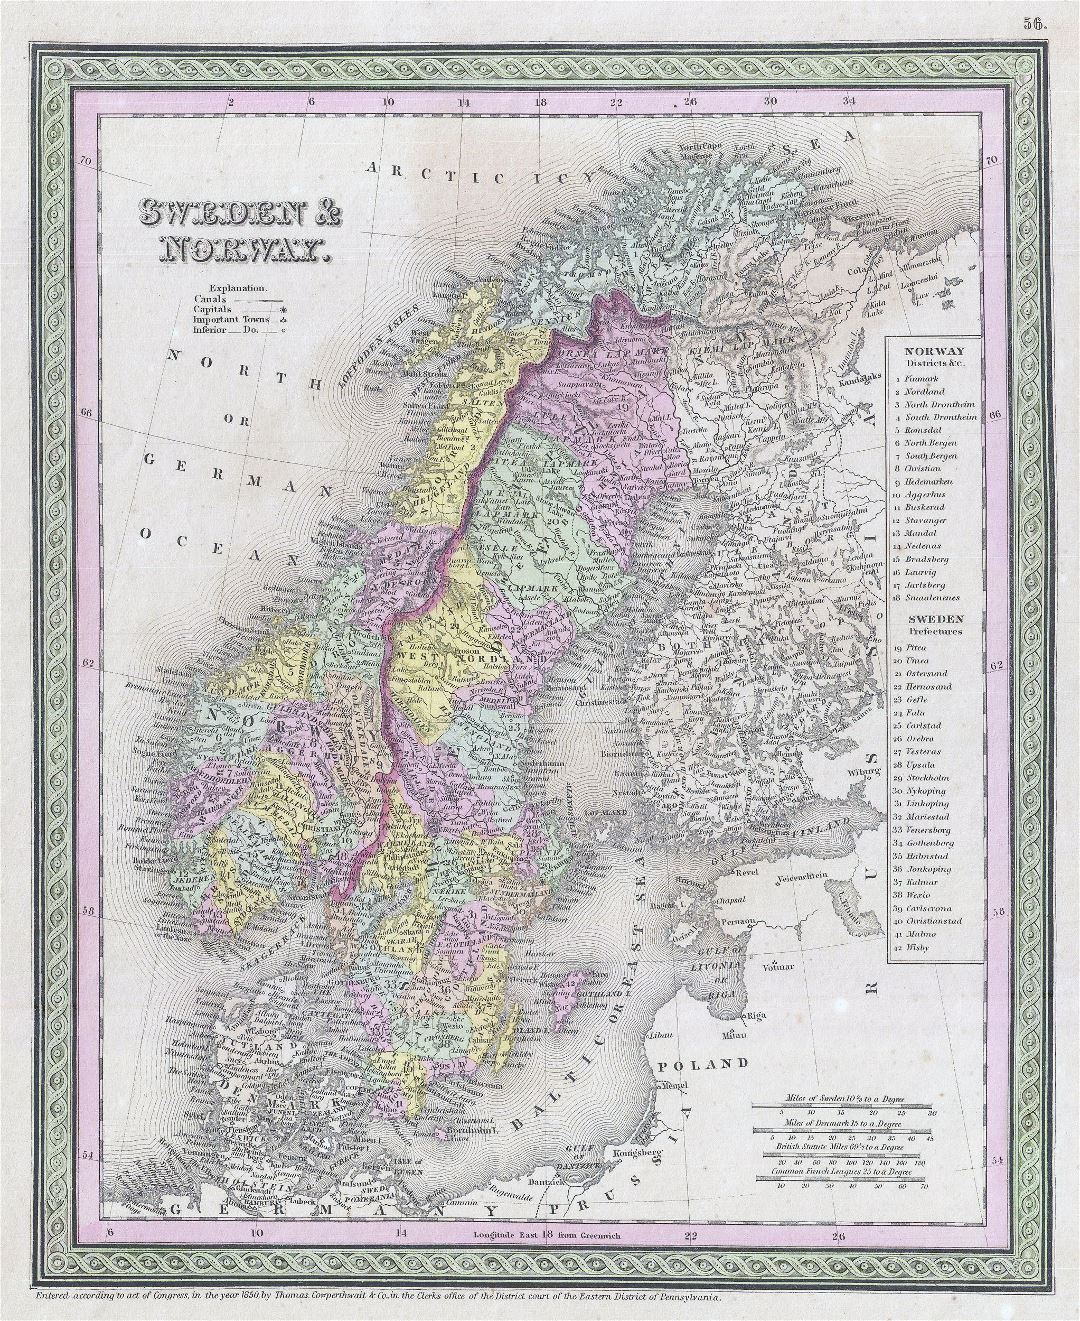 Grande Antiguo mapa político detallado de Suecia y Noruega - 1850